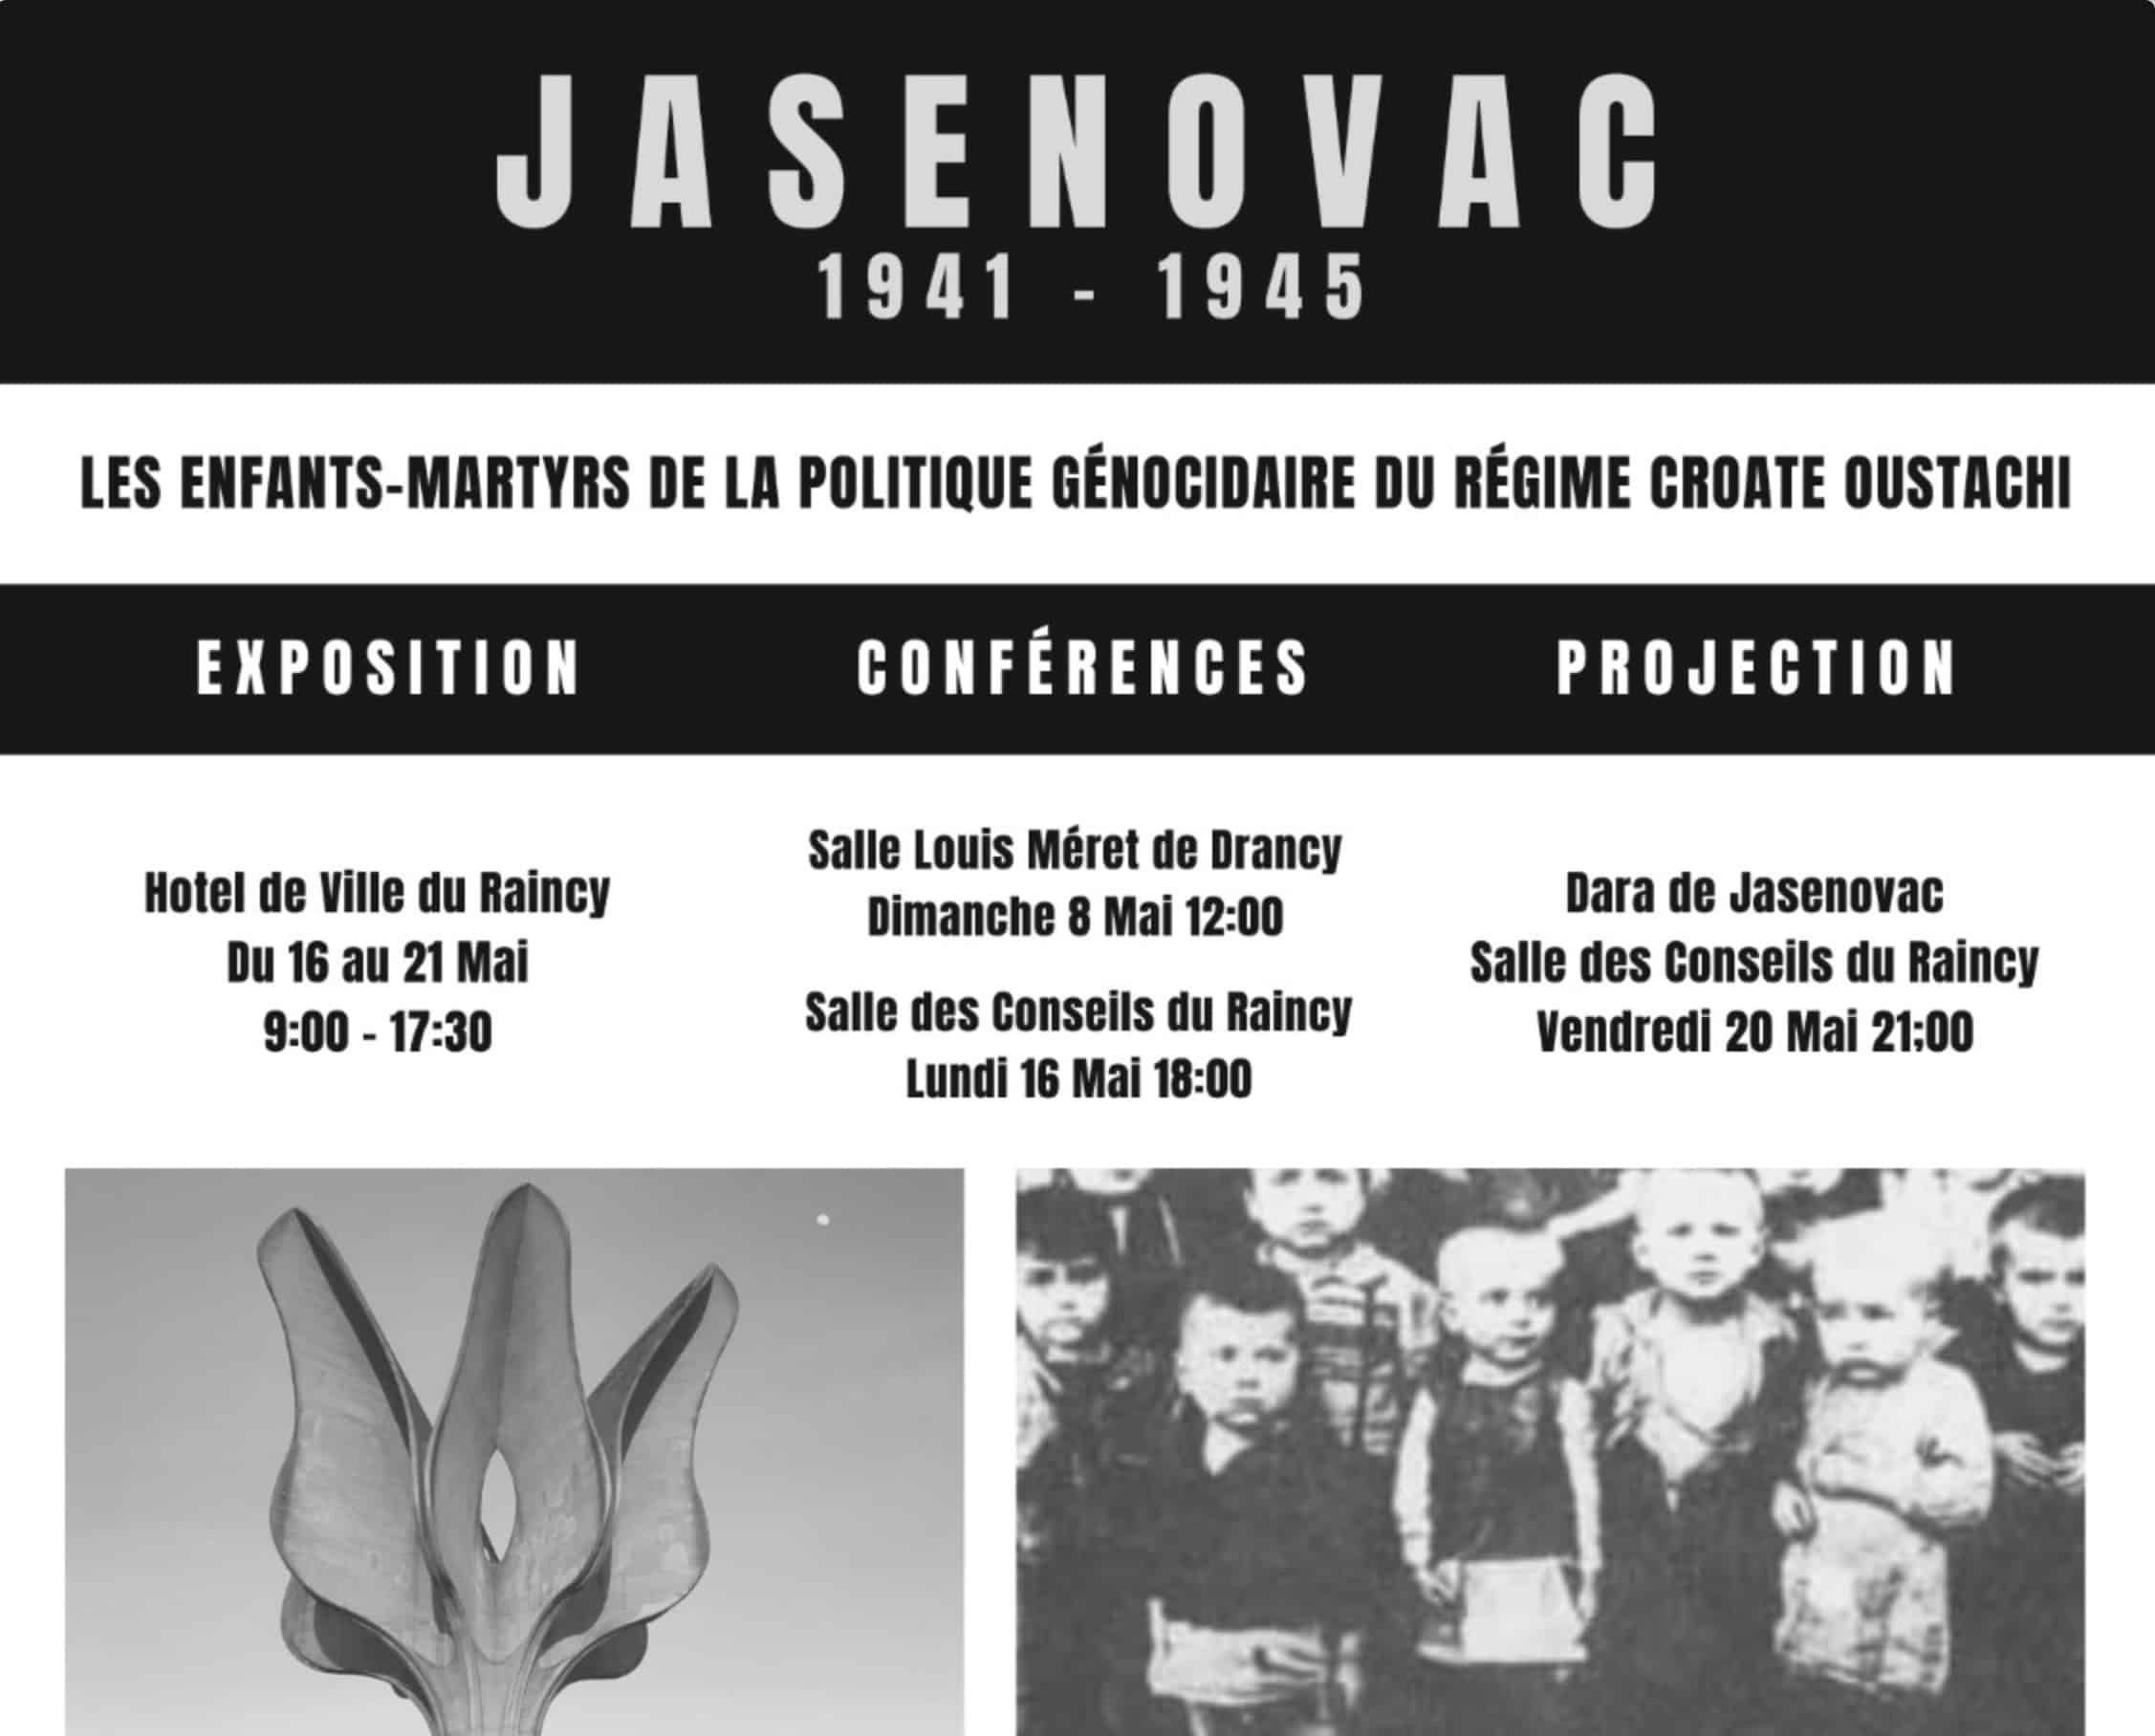 Conférence : « la souffrance des enfants du régime oustachi en croatie de 1941 à 1945 » donnée par mgr jean culibrk, évêque de slavonie le 8 mai à drancy